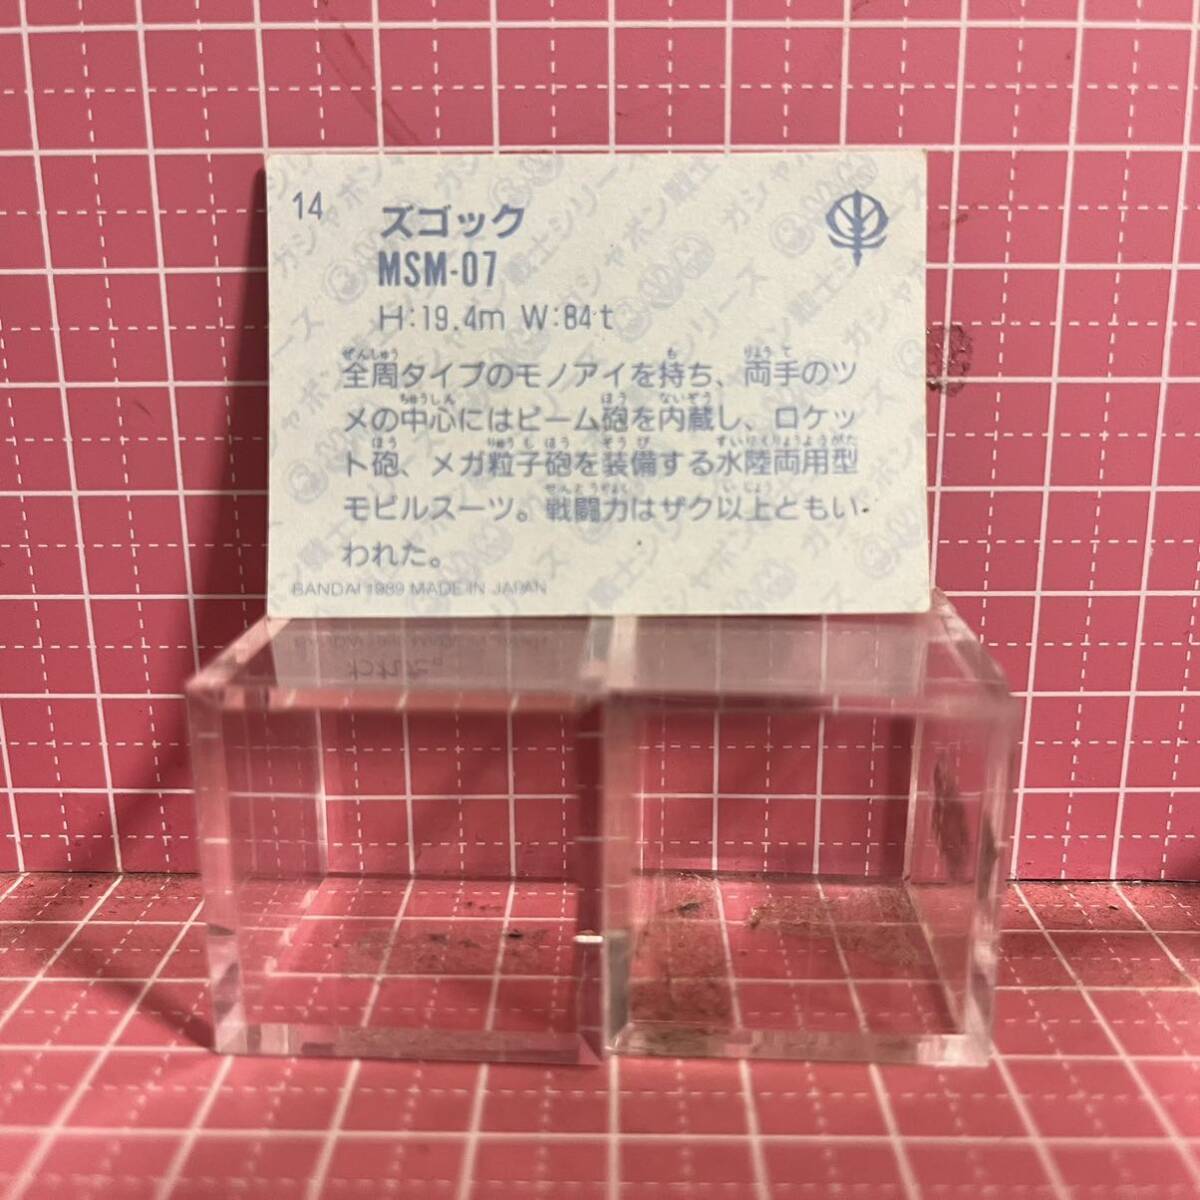  gun erasing SD Gundam seal card 32 MSM-07zgok